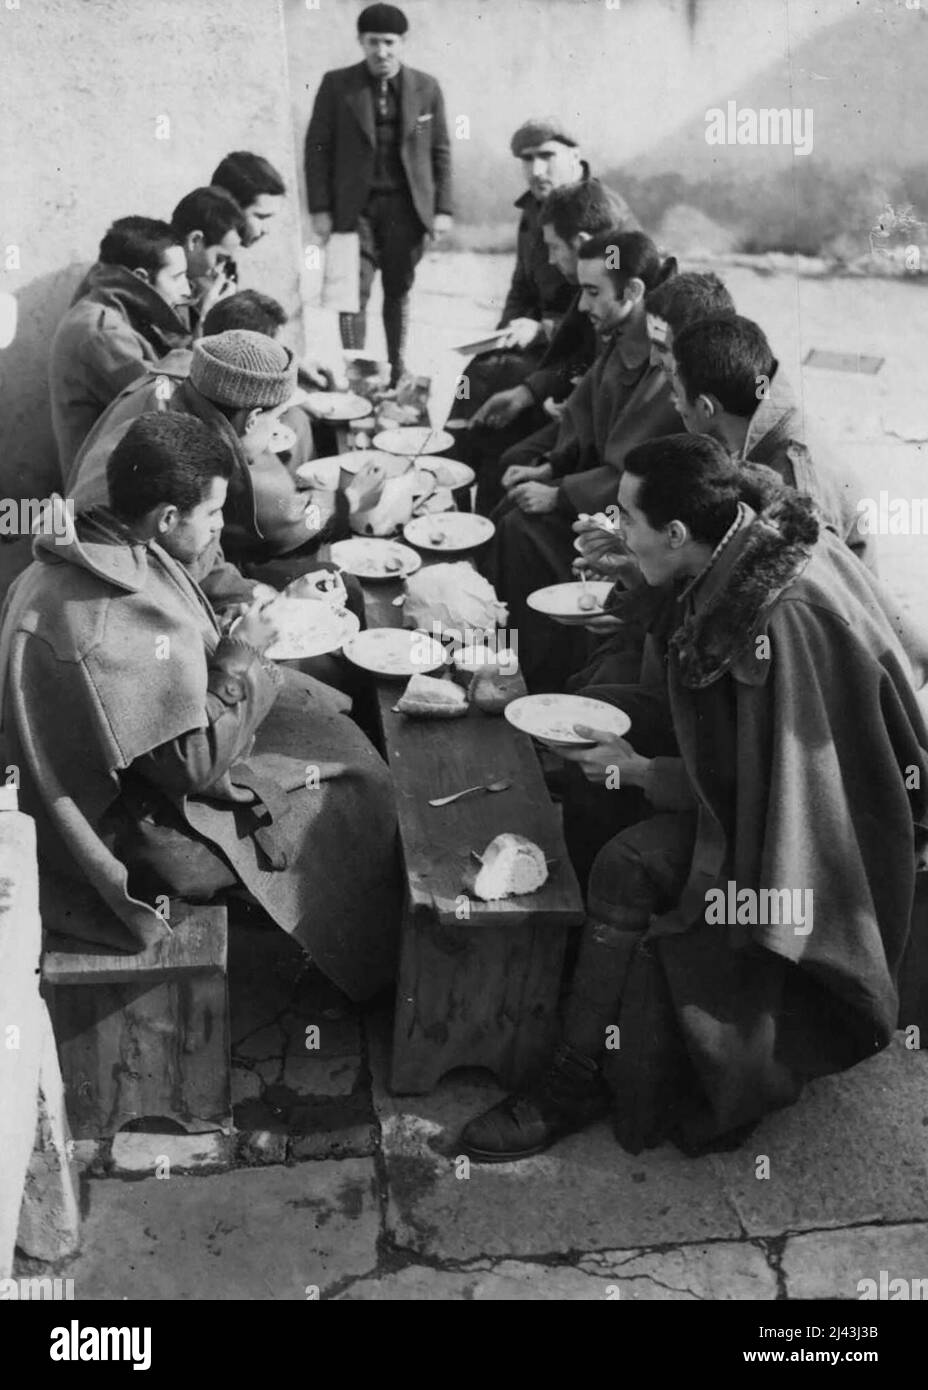 Bemerkenswerte Bilder aus Spanien heute Sonntag -- Franco-Soldaten bei ihrem ersten Essen für viele Tage, in Bourg Madame. Diese bemerkenswerten Bilder, die in Bourg Madame in den französischen Pyrenäen an der französisch-spanischen Grenze aufgenommen wurden, zeigen Franco-Soldaten, die während des Angriffs auf Harcelona von den Truppen der spanischen Regierung gefangen genommen wurden. Sie waren auf dem Weg nach Nordspanien mit dem Zug zum Probelauf, als sie nahe der französischen Grenze absprangen, über die Pyrenäen kamen und sich den Franzosen übergaben. 20. Februar 1939. (Foto von London News Agency Photos Ltd.). Stockfoto